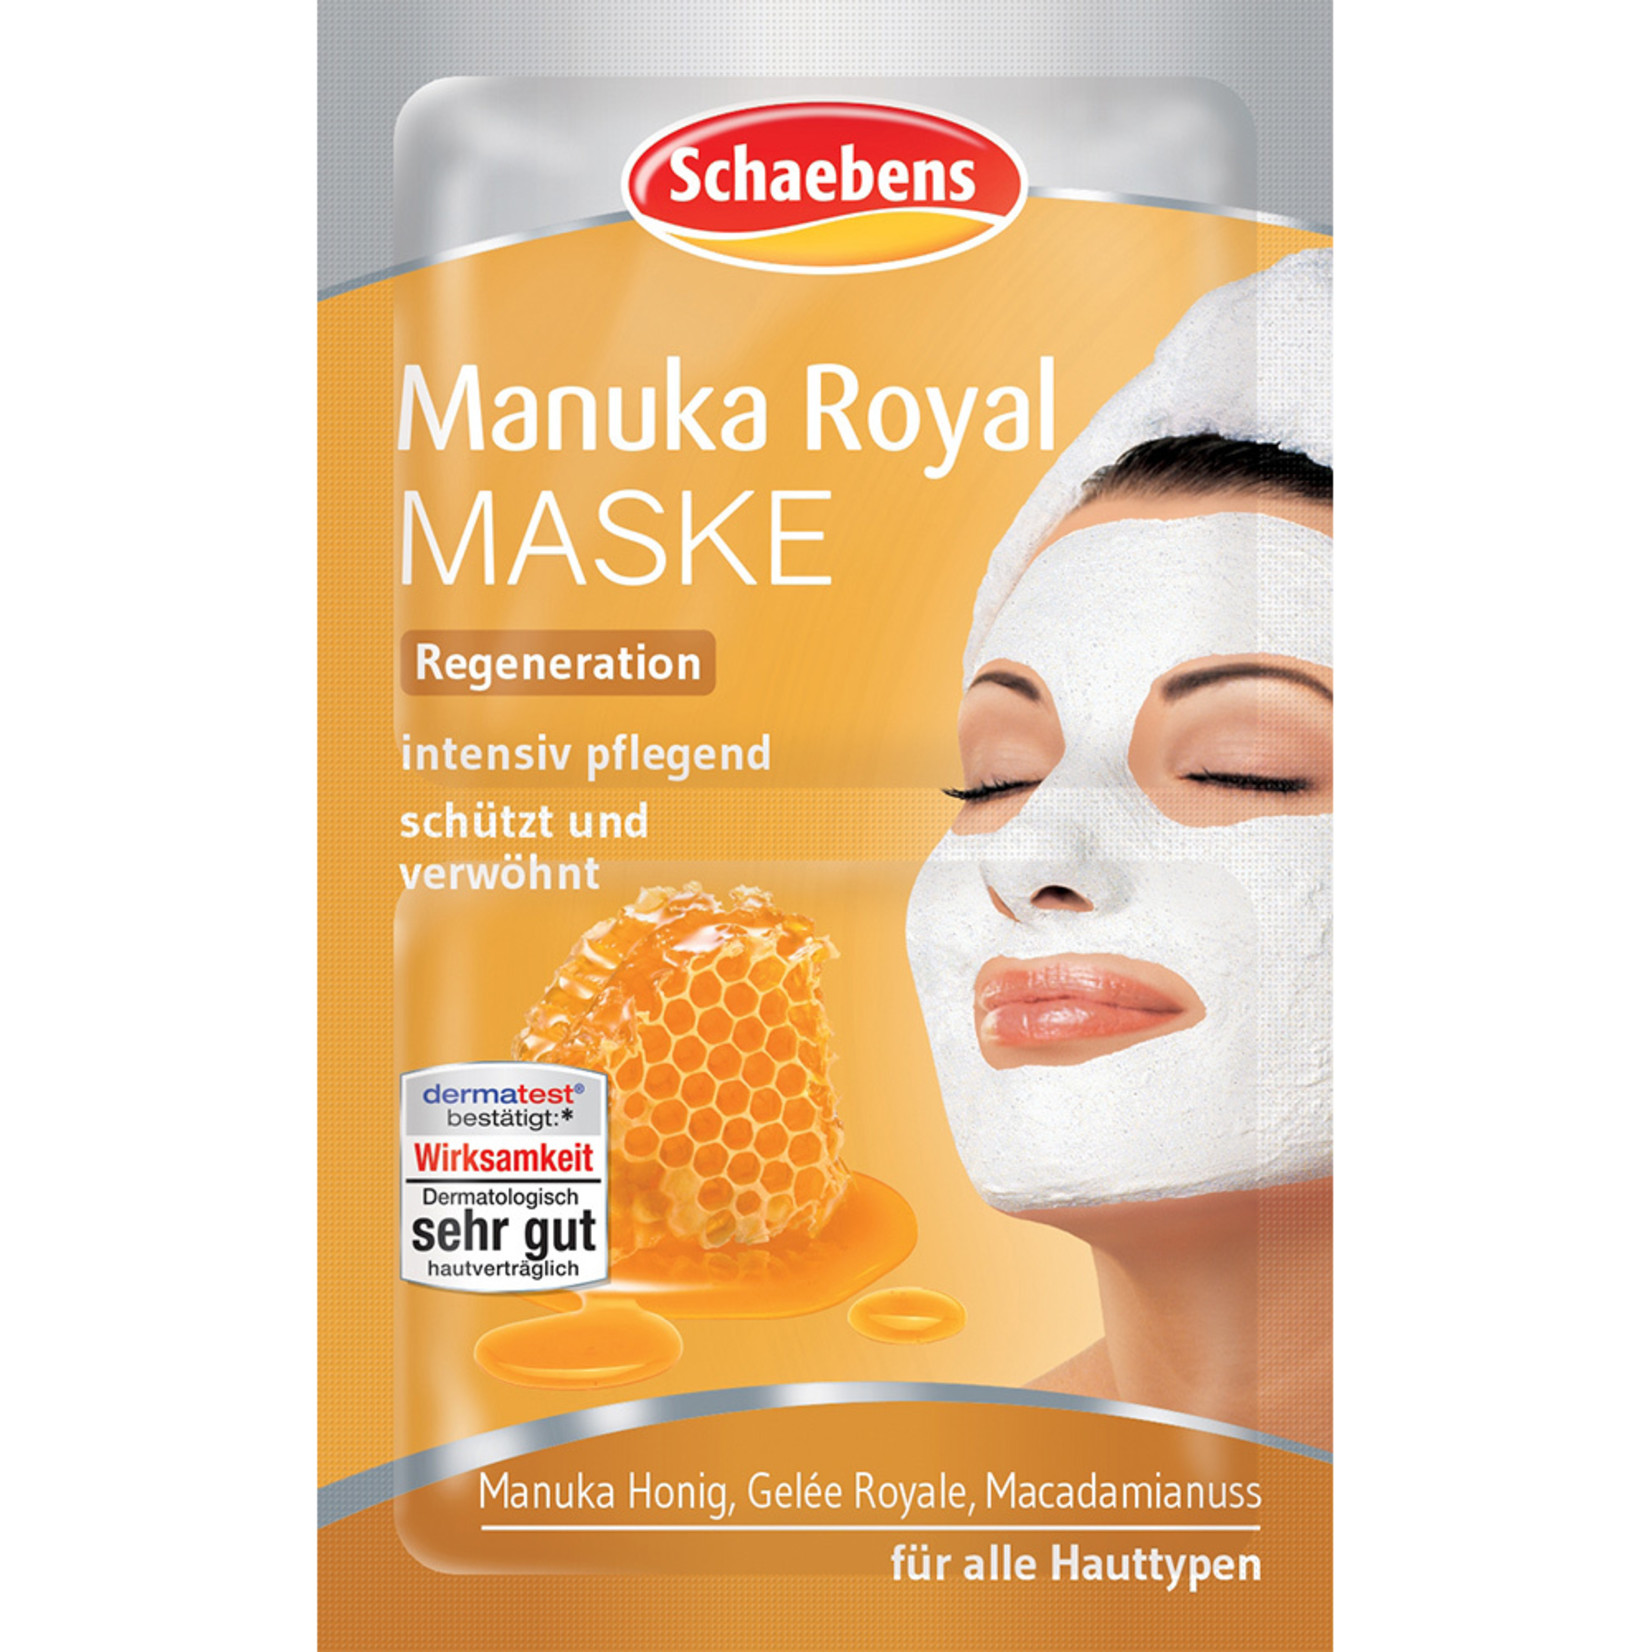 Manuka Royal Mask